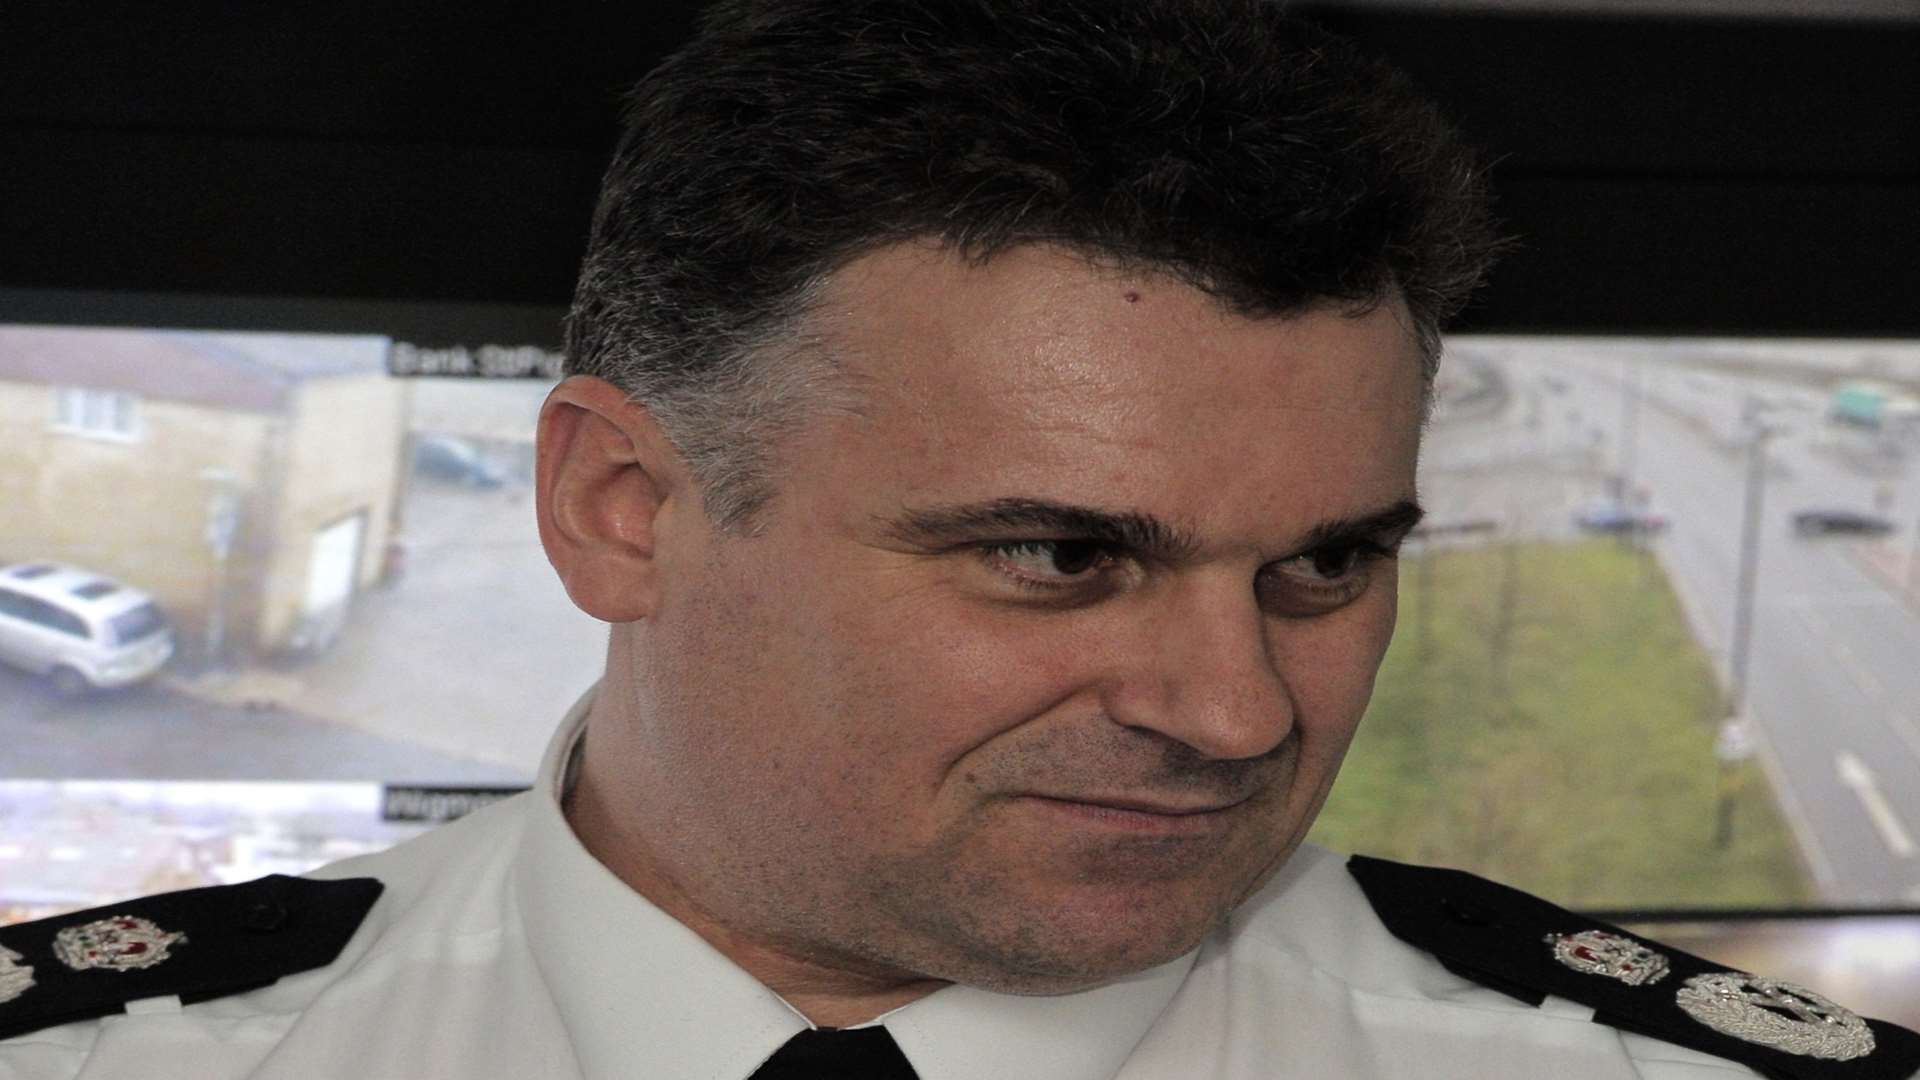 Chief Constable Alan Pughsley